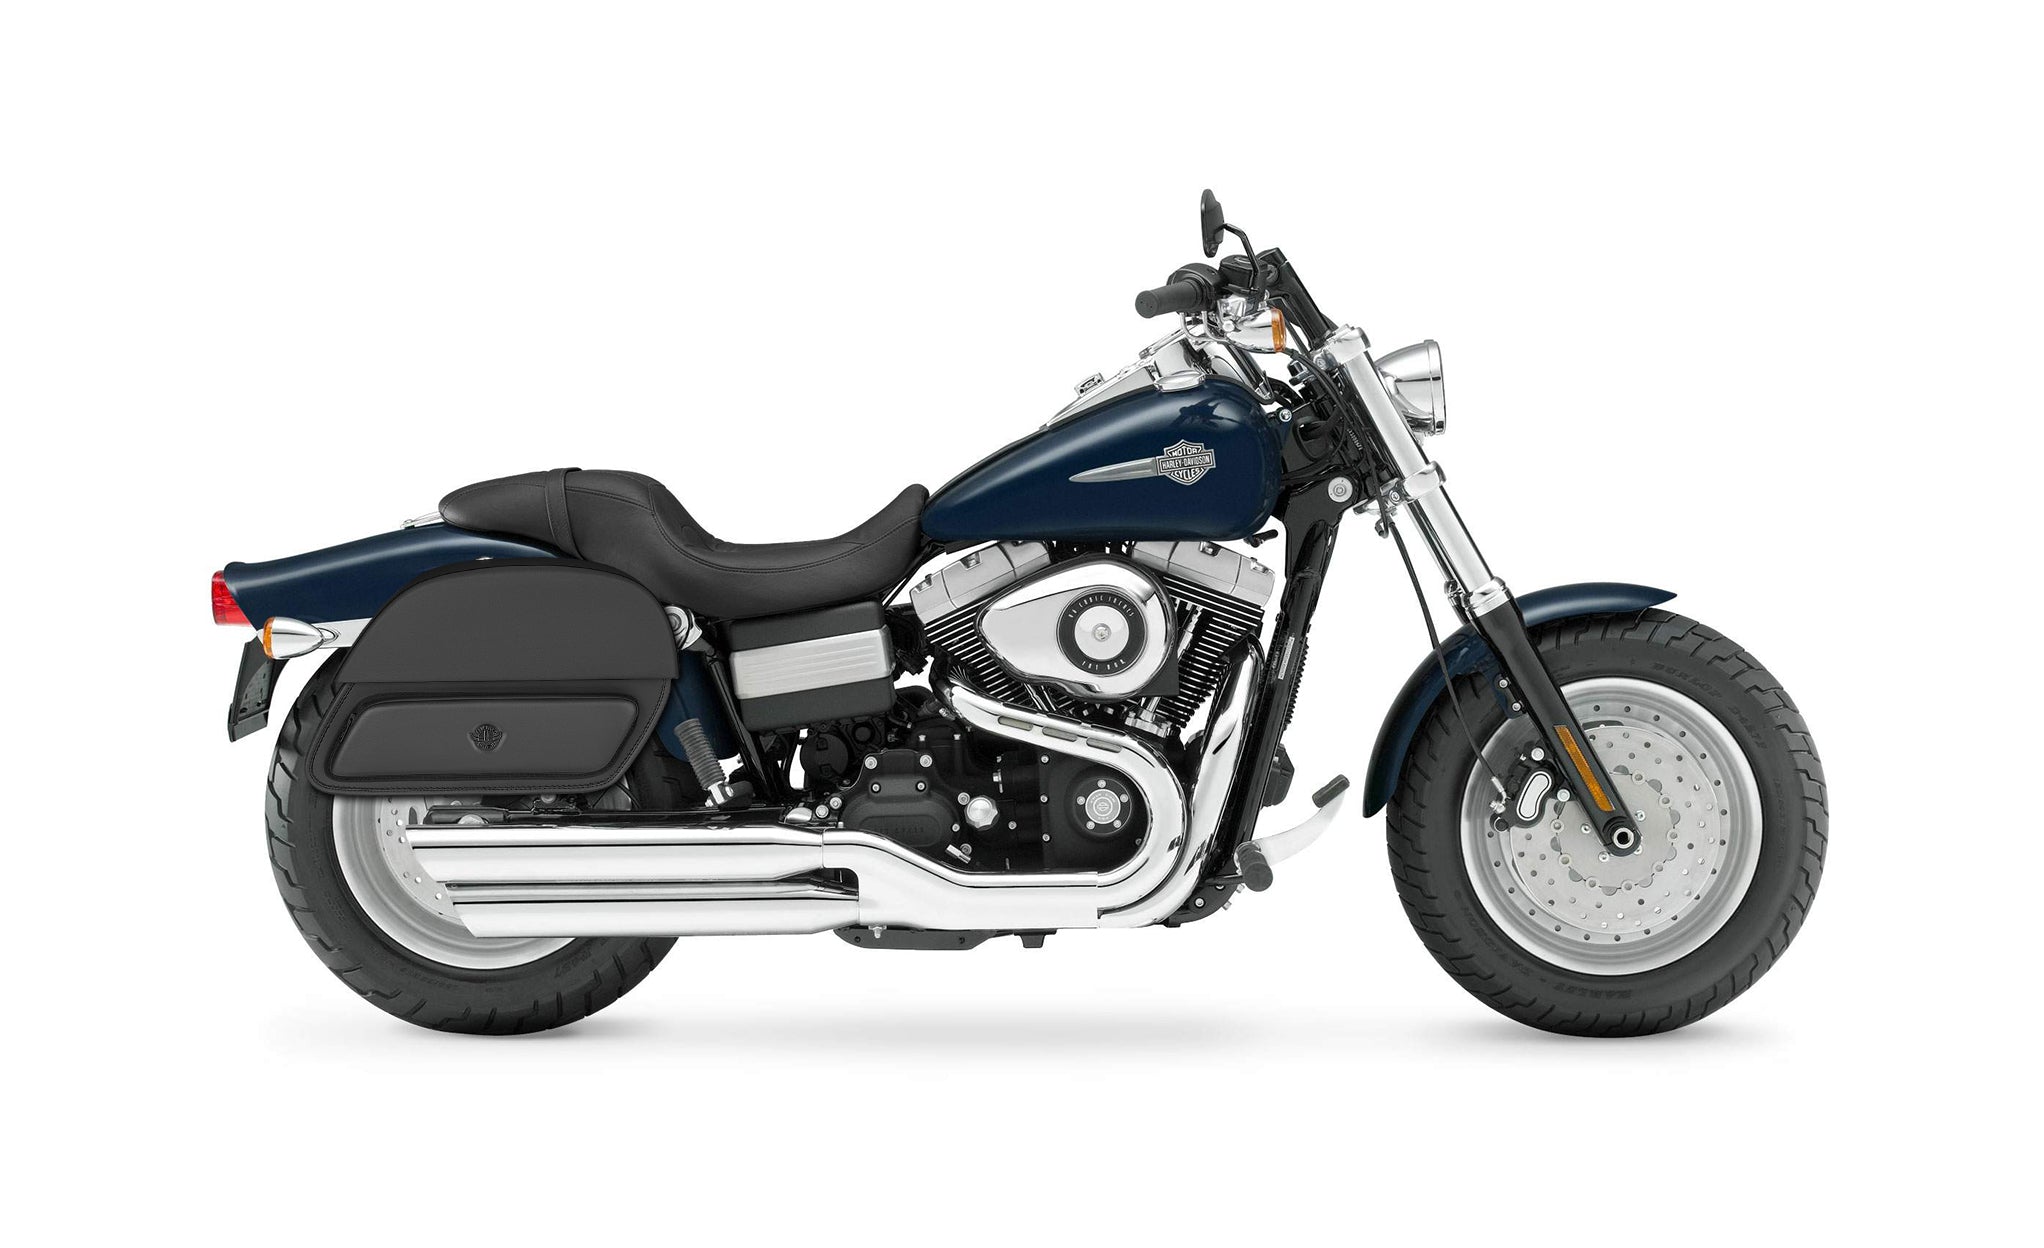 Viking Pantheon Medium Leather Motorcycle Saddlebags For Harley Dyna Fat Bob Fxdf Se on Bike Photo @expand